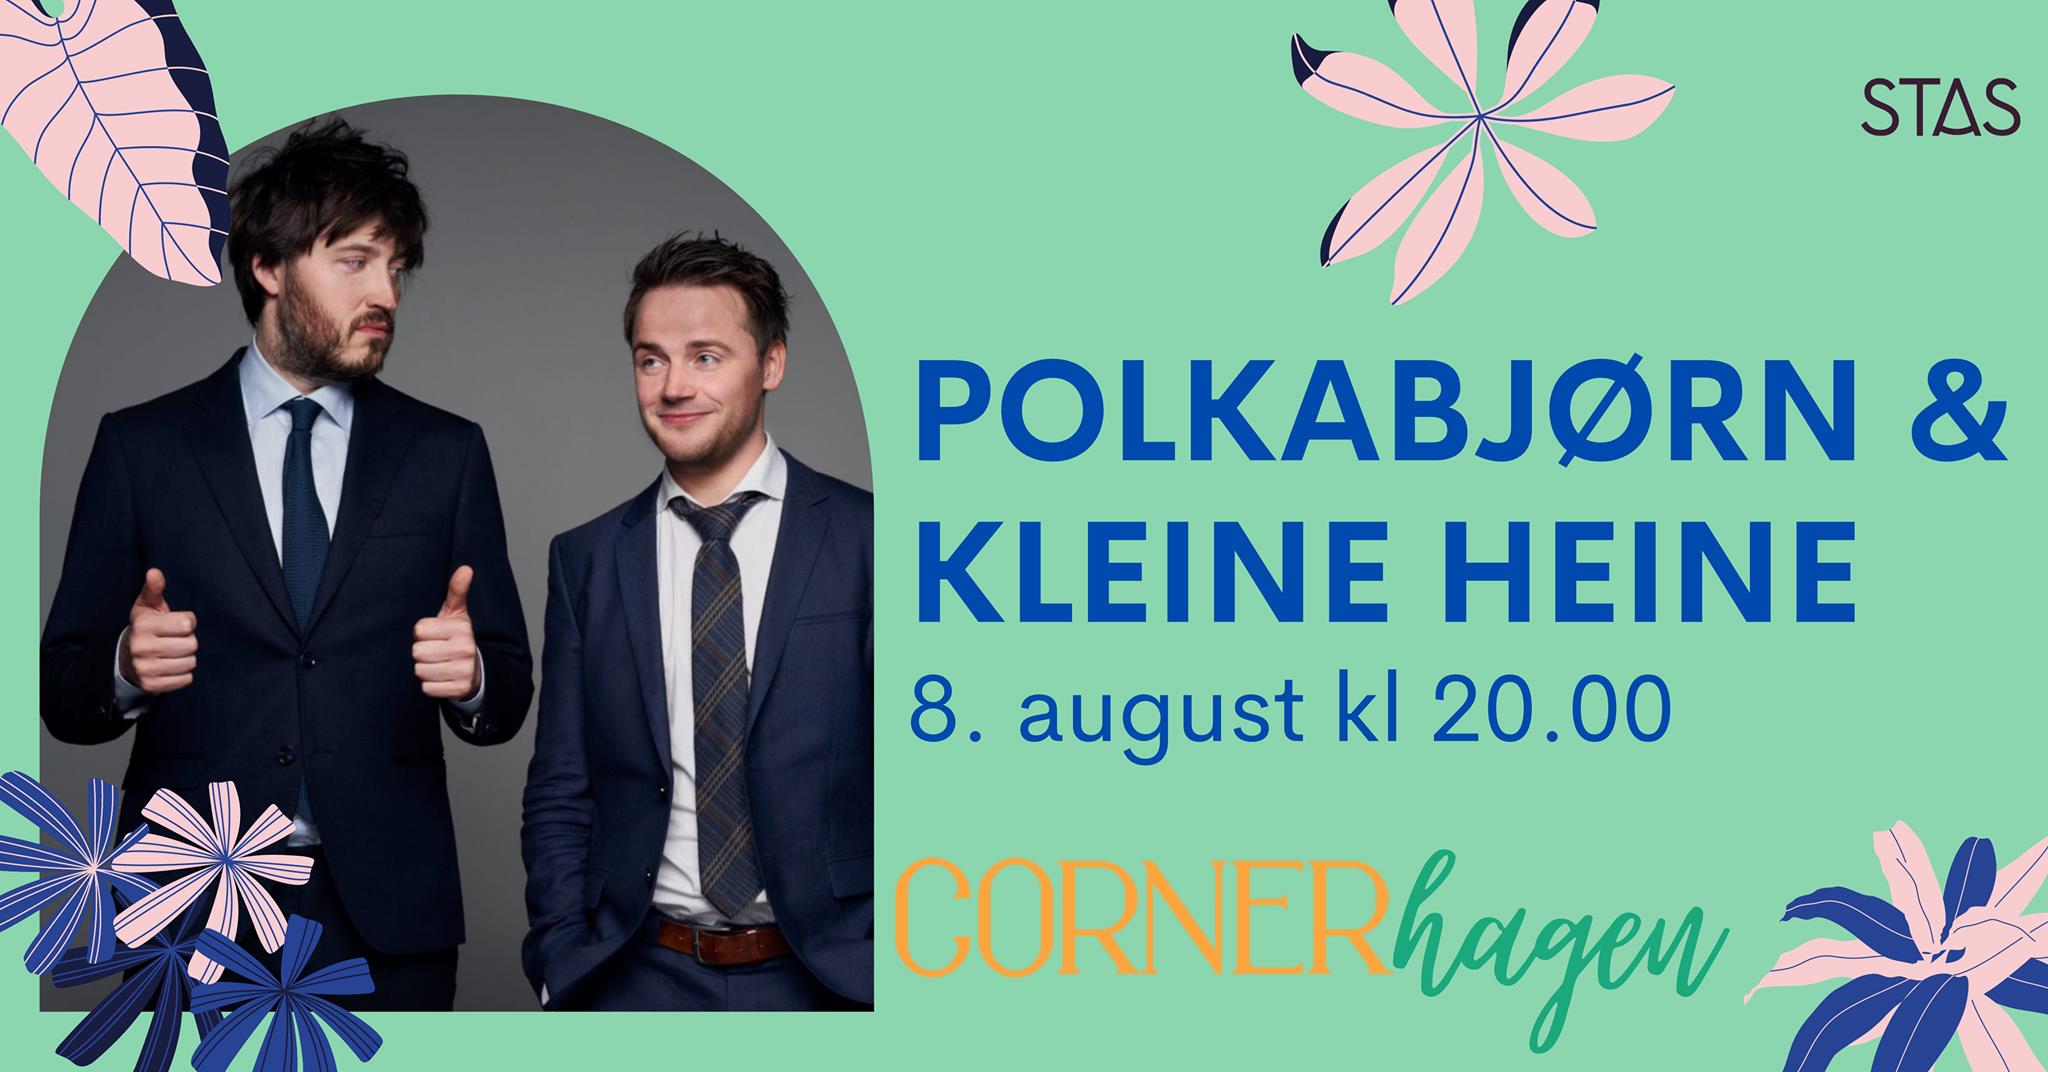 Polkabjørn & Kleine Heine i Cornerhagen  - Stas Artist 